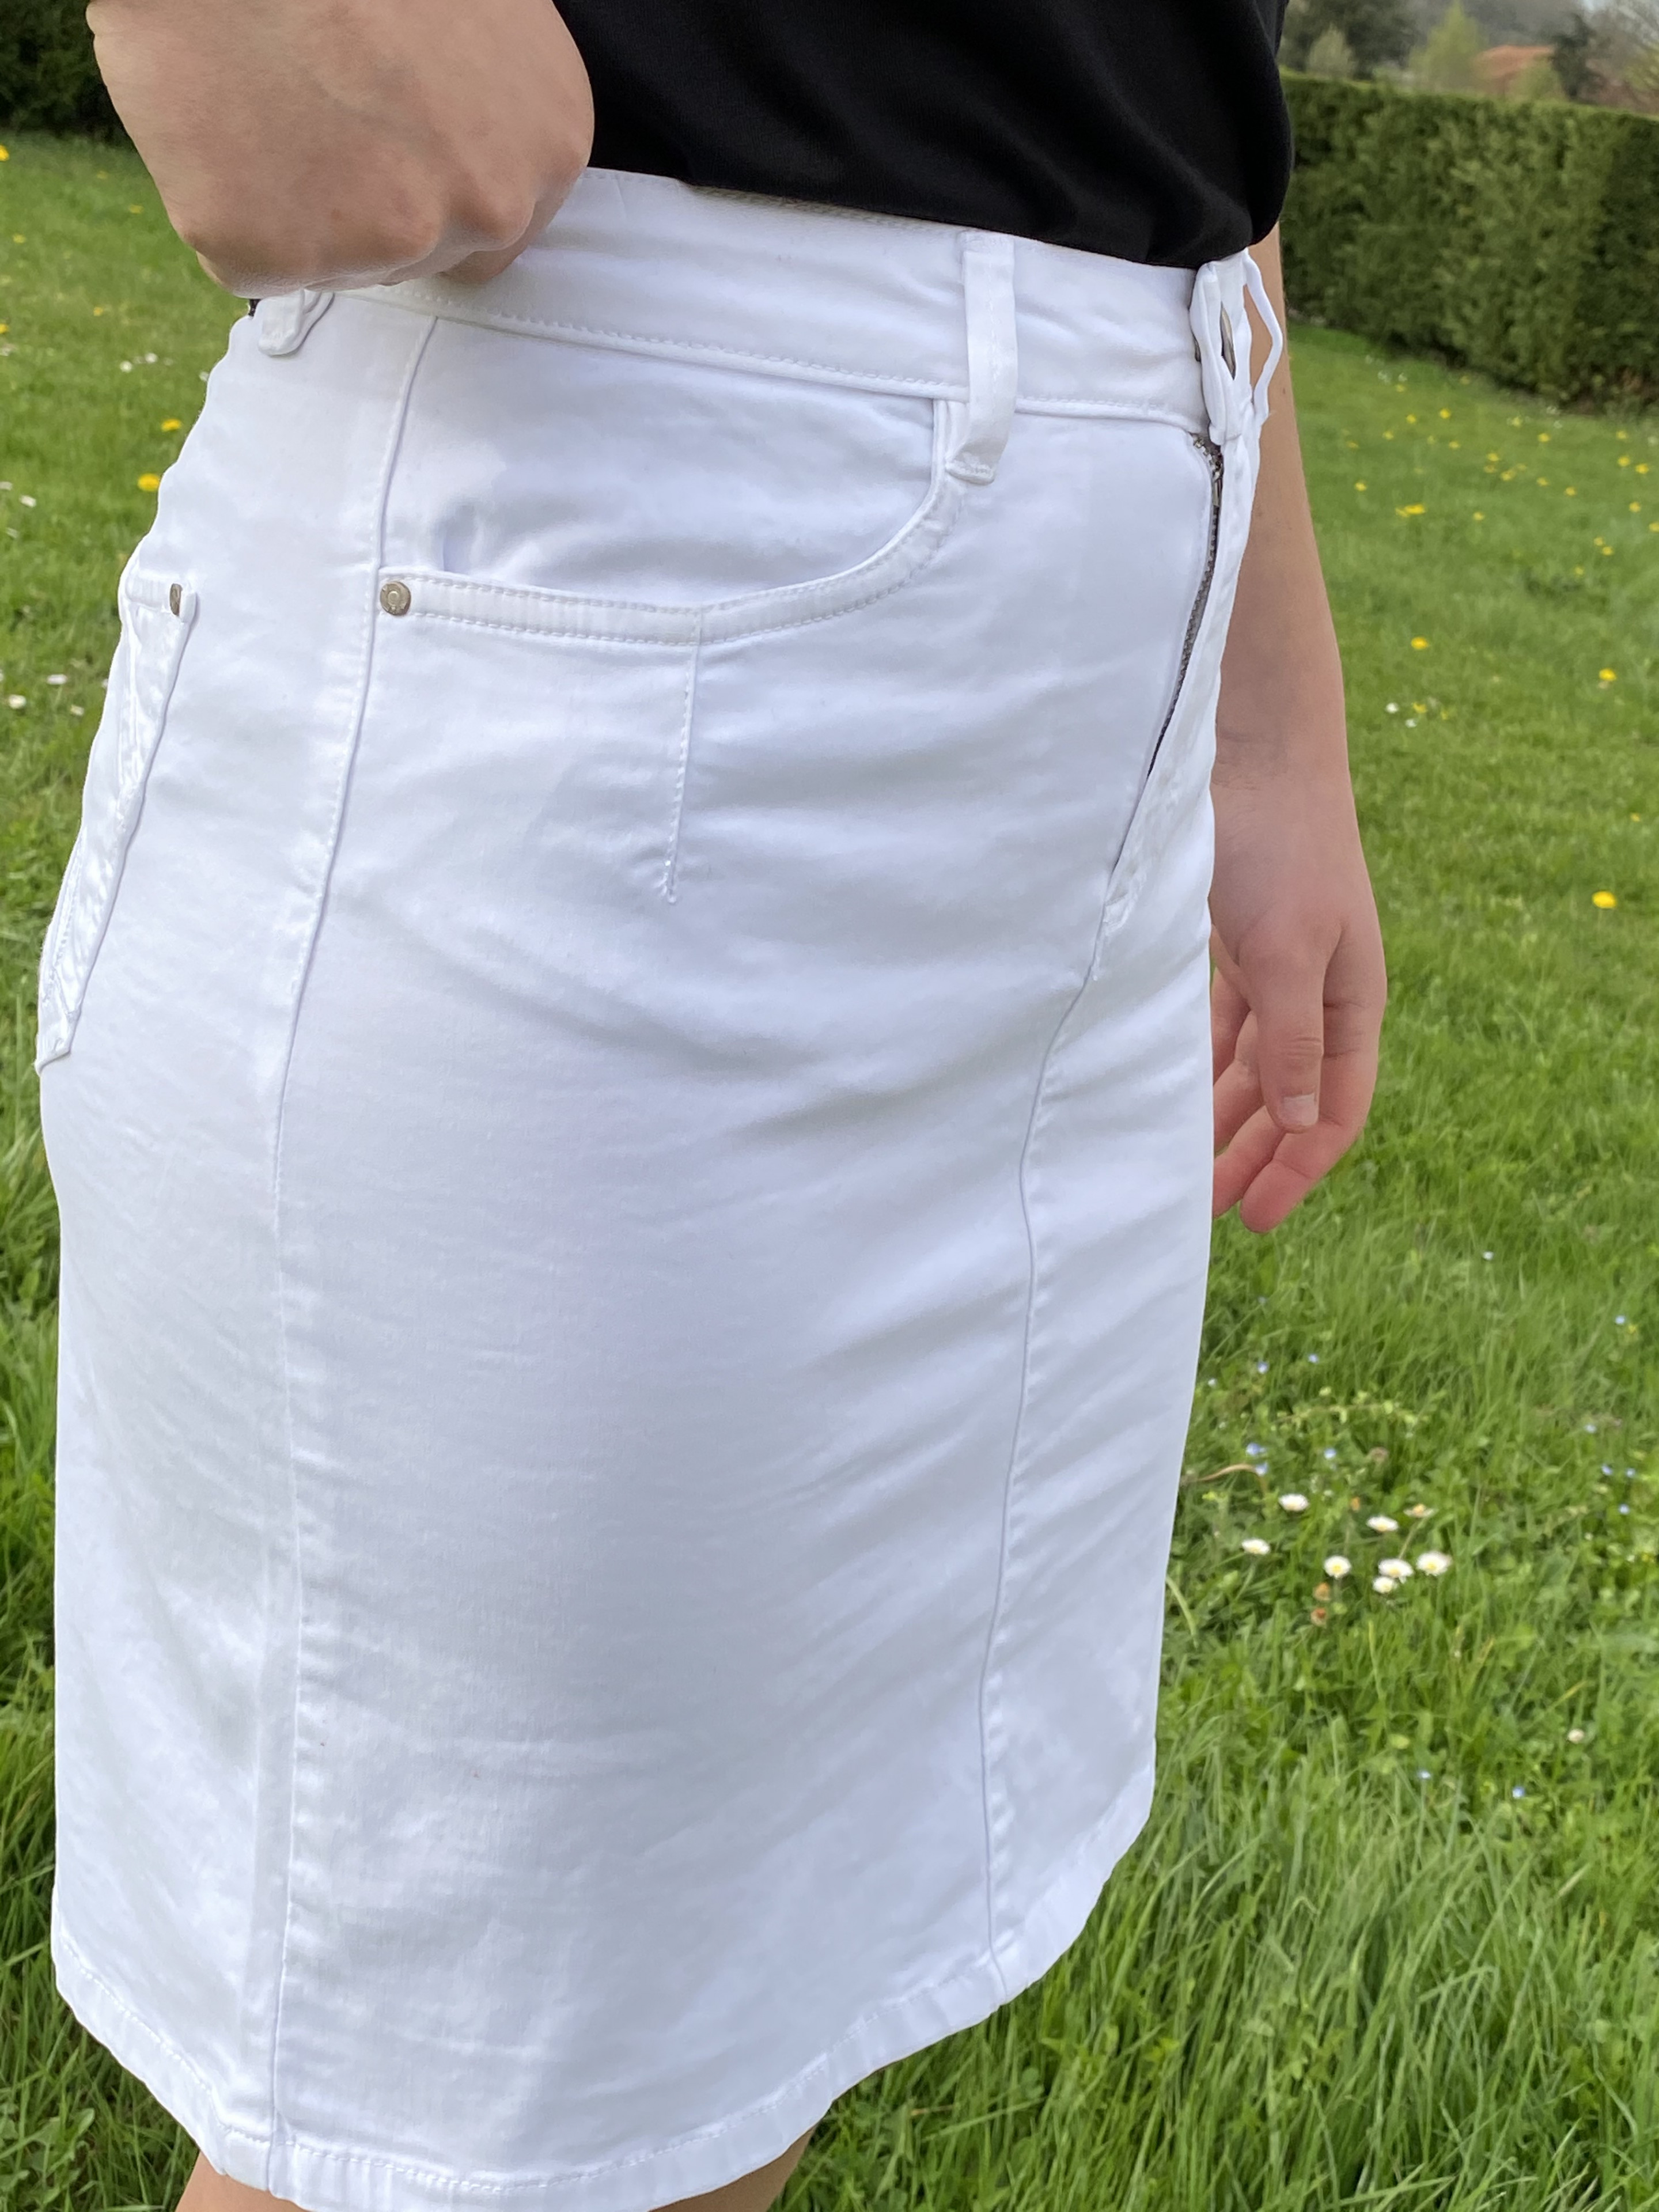 Jupe courte blanche femme - BOUTIQUE CAPRICES